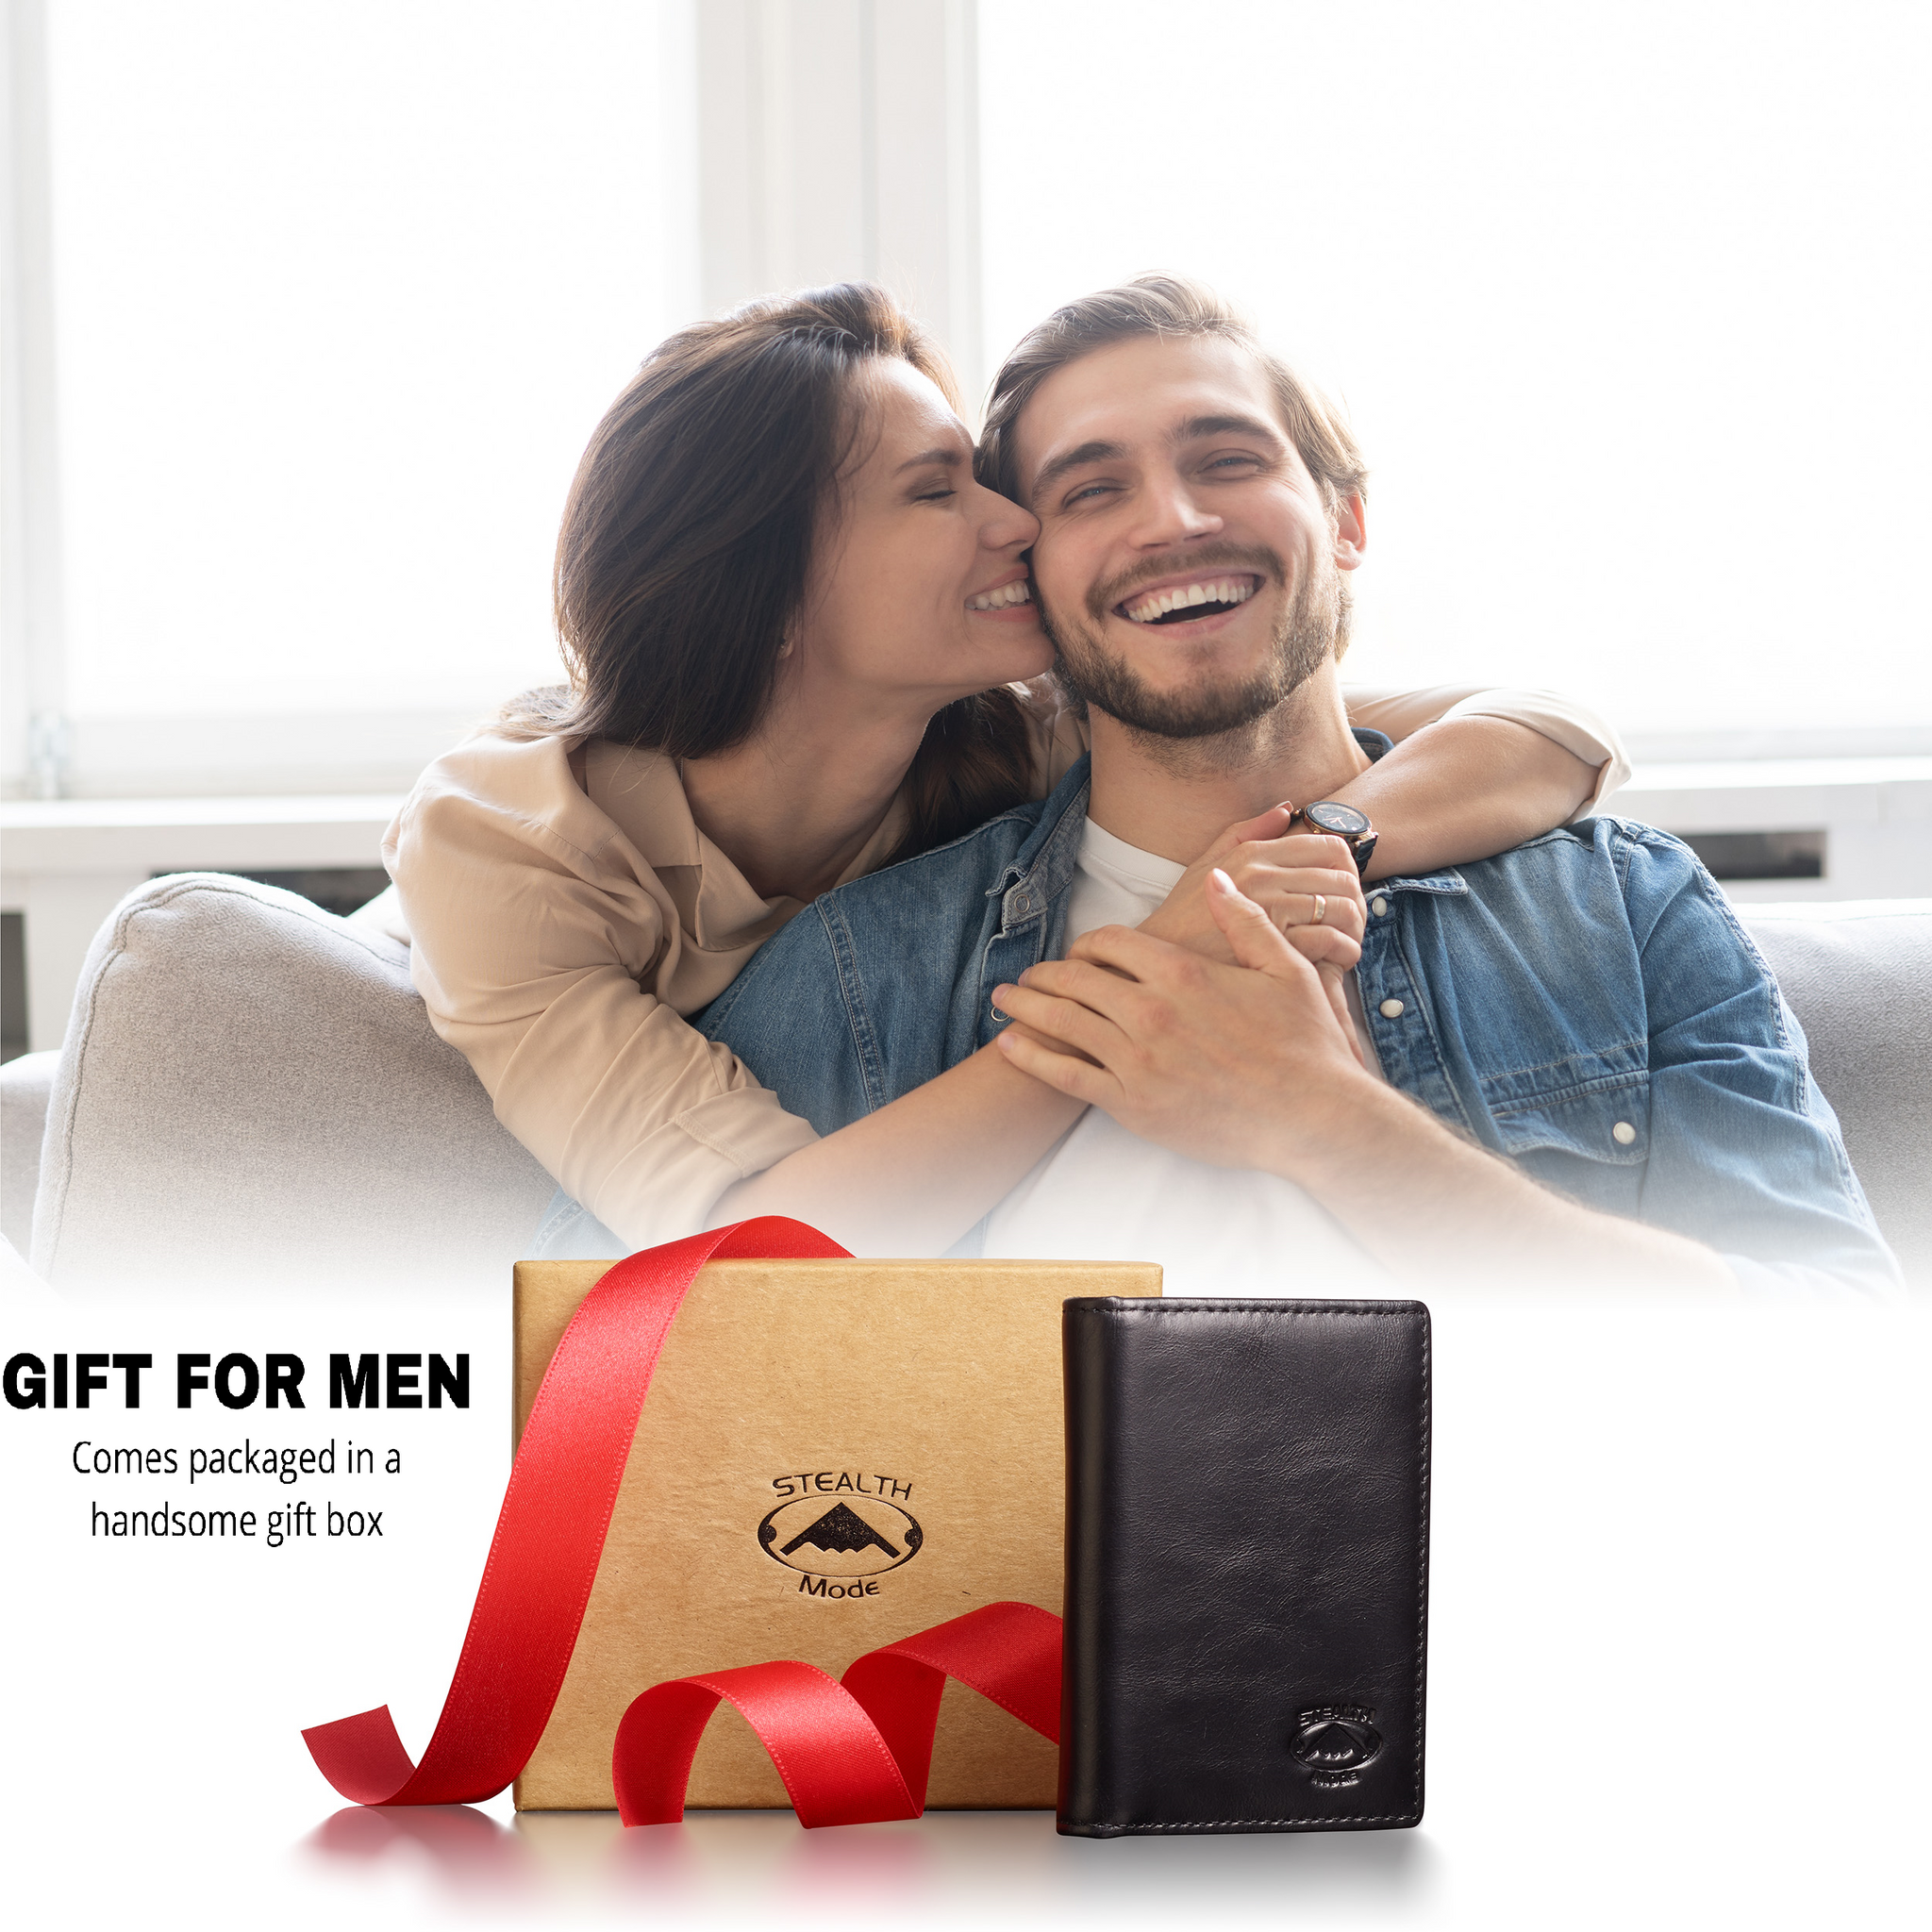 Front Pocket Slim Bifold Wallet for Men Charred Oak